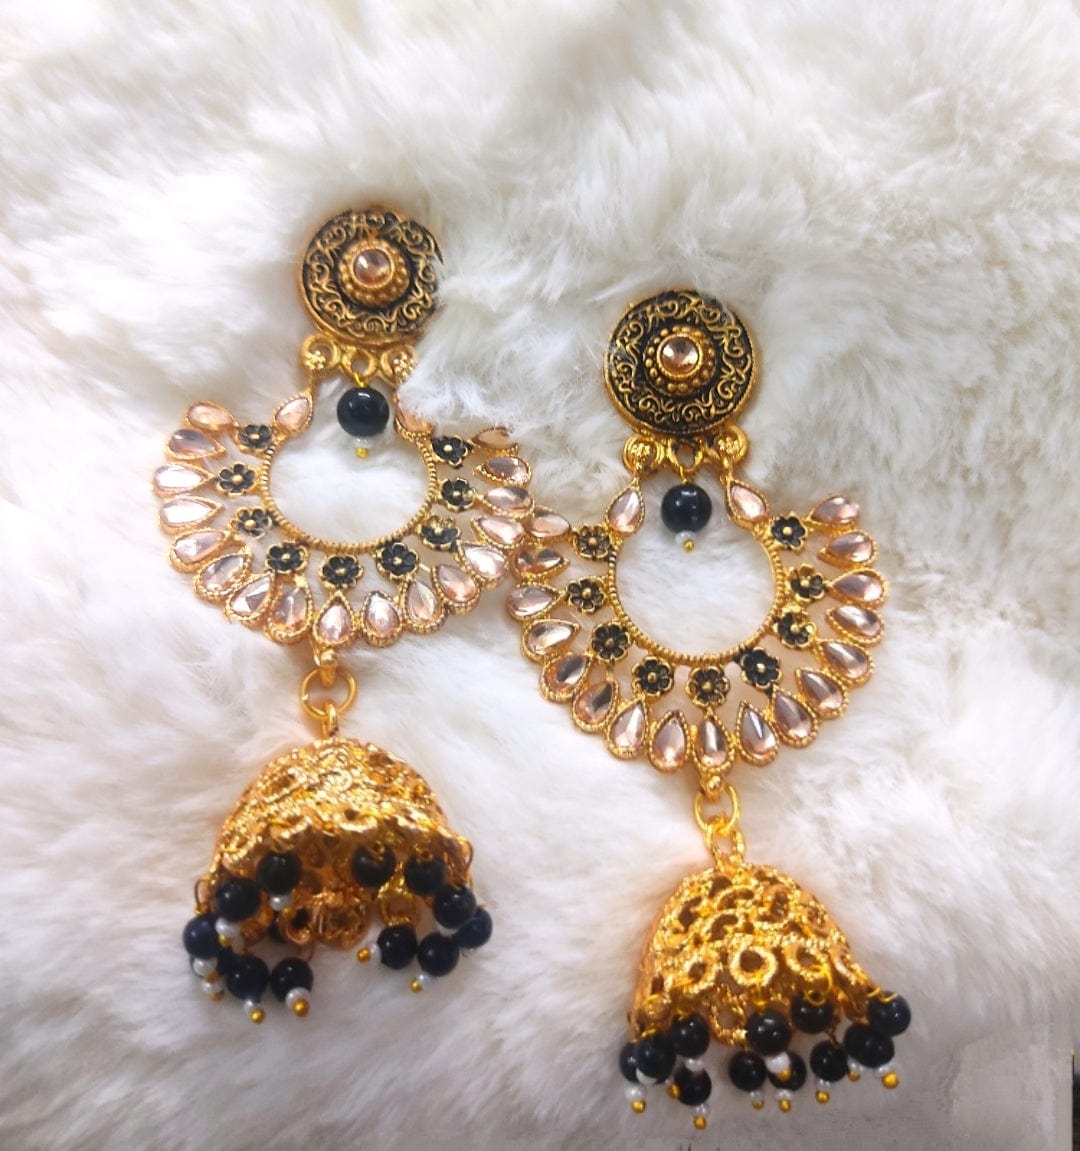 Lamansh chandbali jhumka & earrings Kundan Chandbali ✨ Jhumka & Teeka Set | Indian Wedding Jewelry with Black Pearls